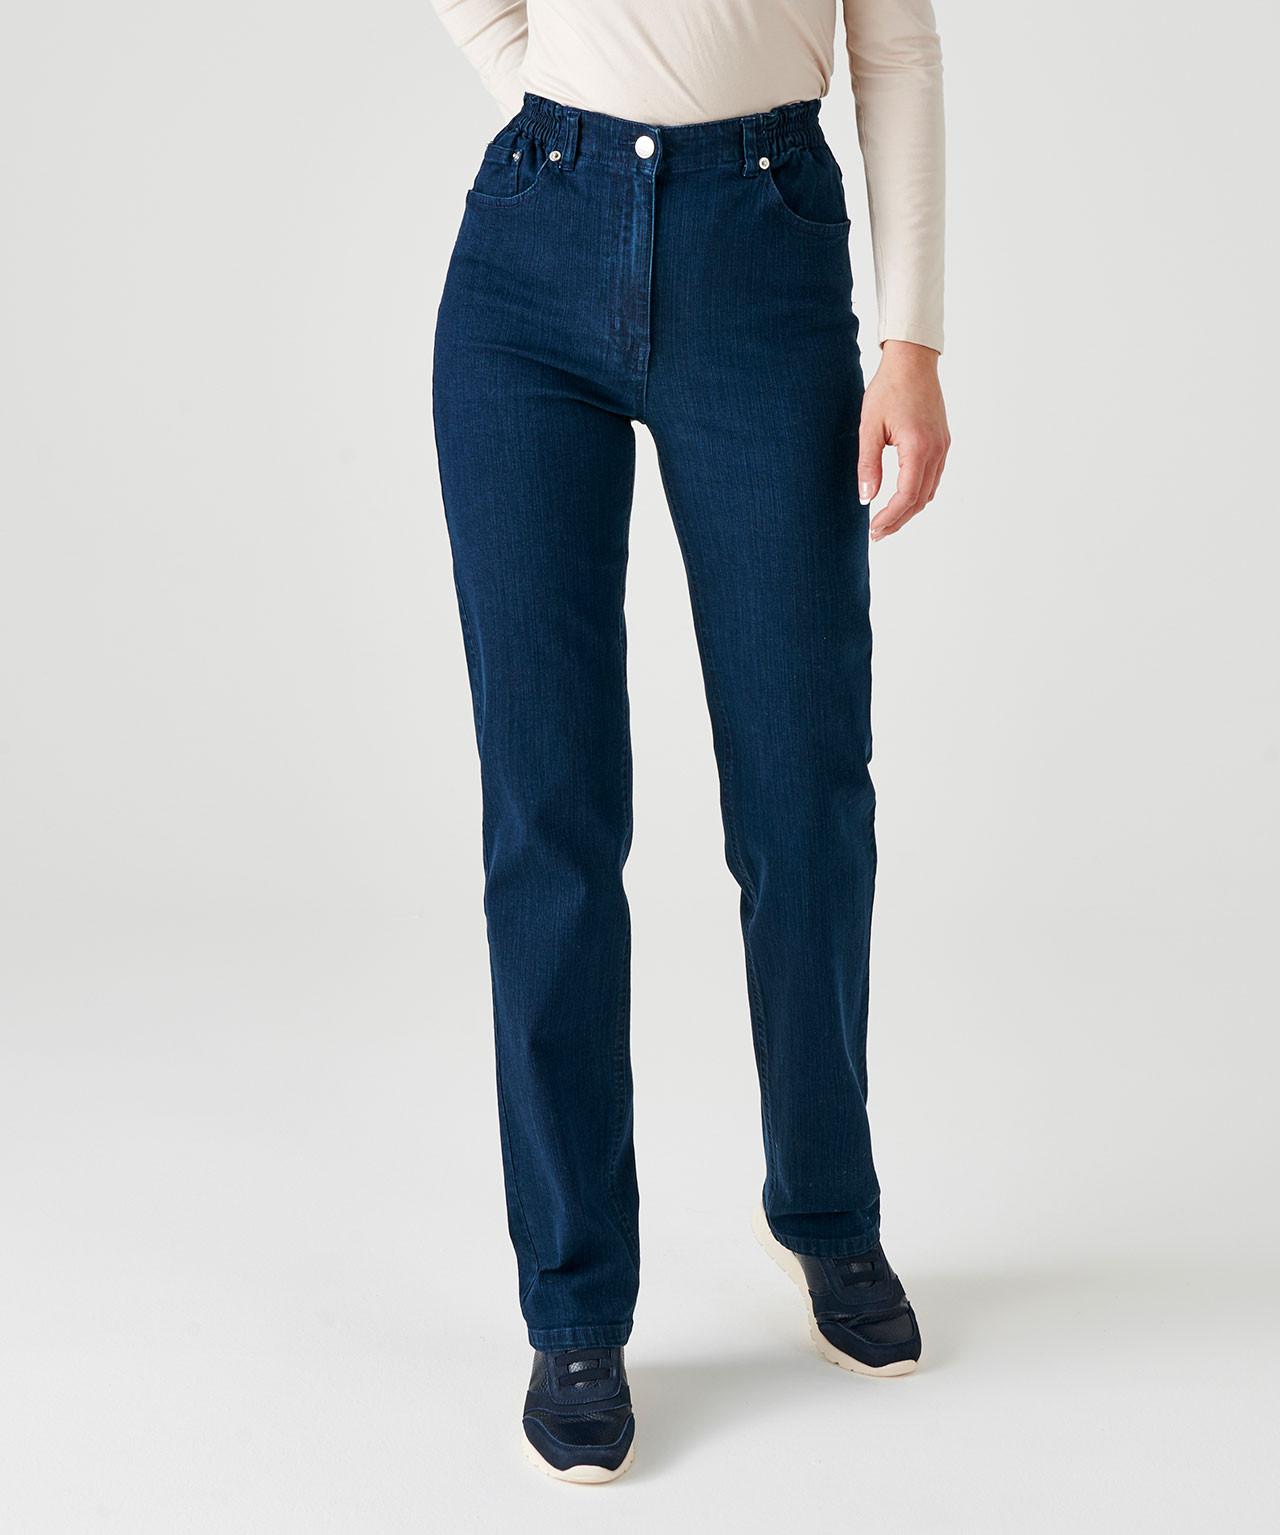 5-pocket-jeans In 2 Körpergrößen. Damen Blau 42 von Damart